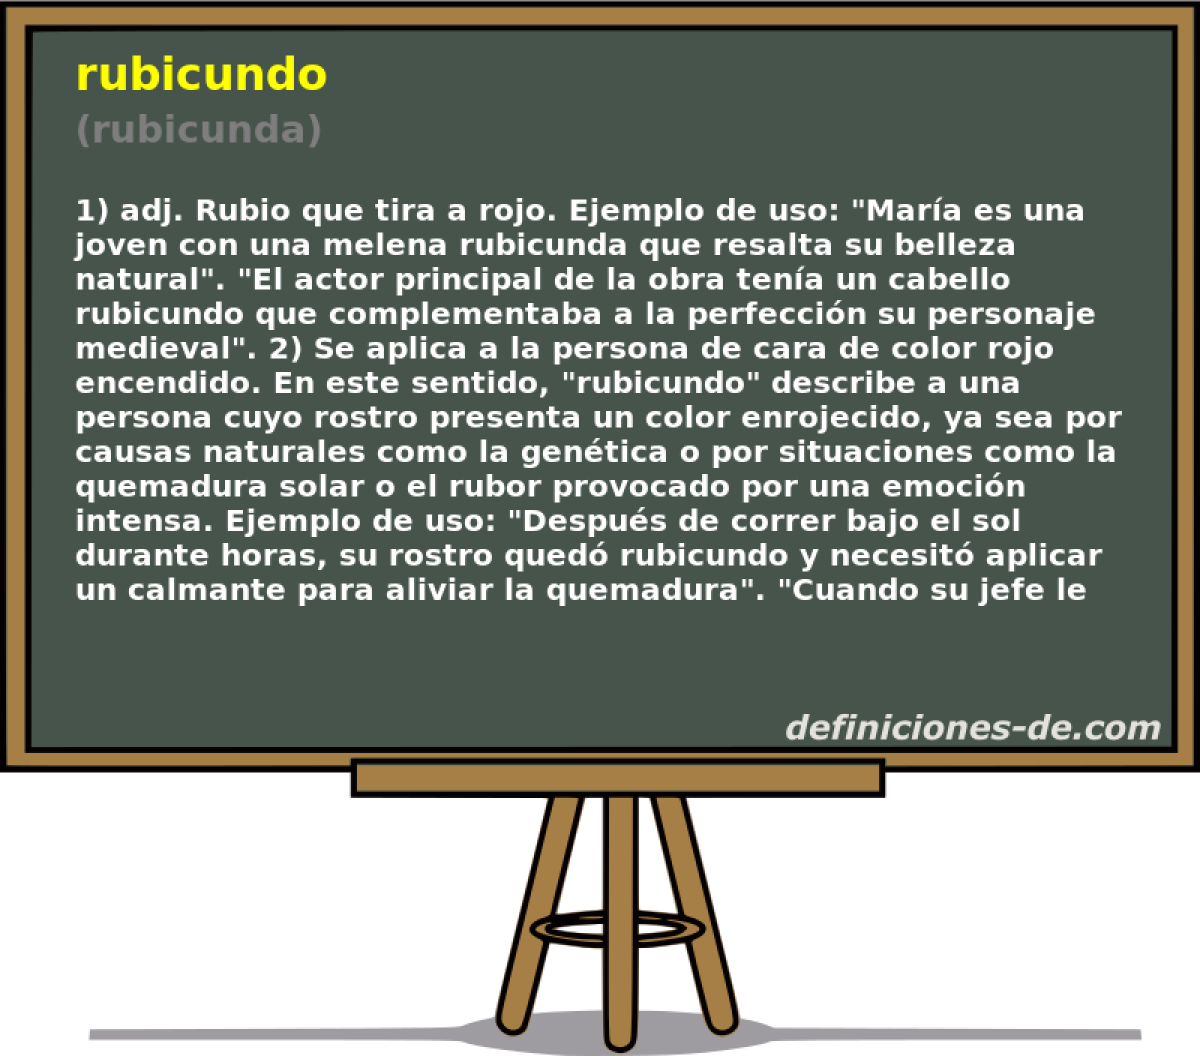 rubicundo (rubicunda)